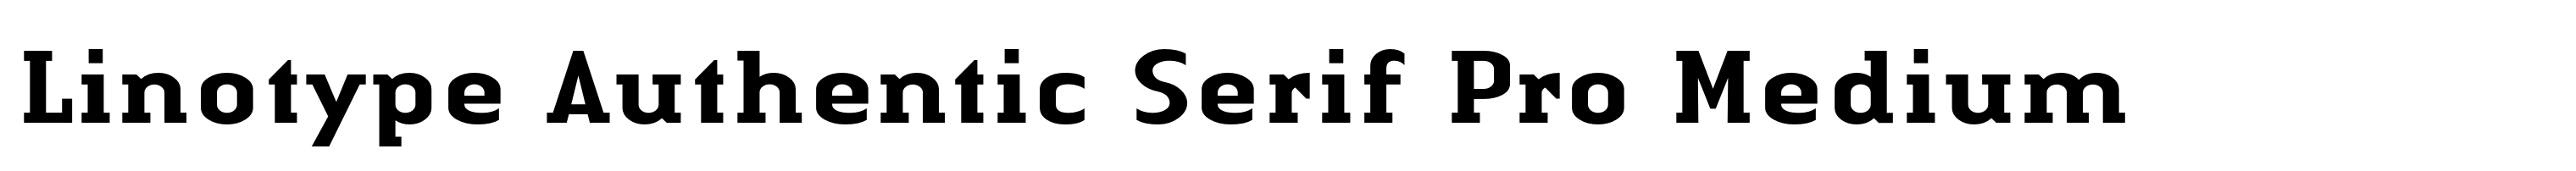 Linotype Authentic Serif Pro Medium